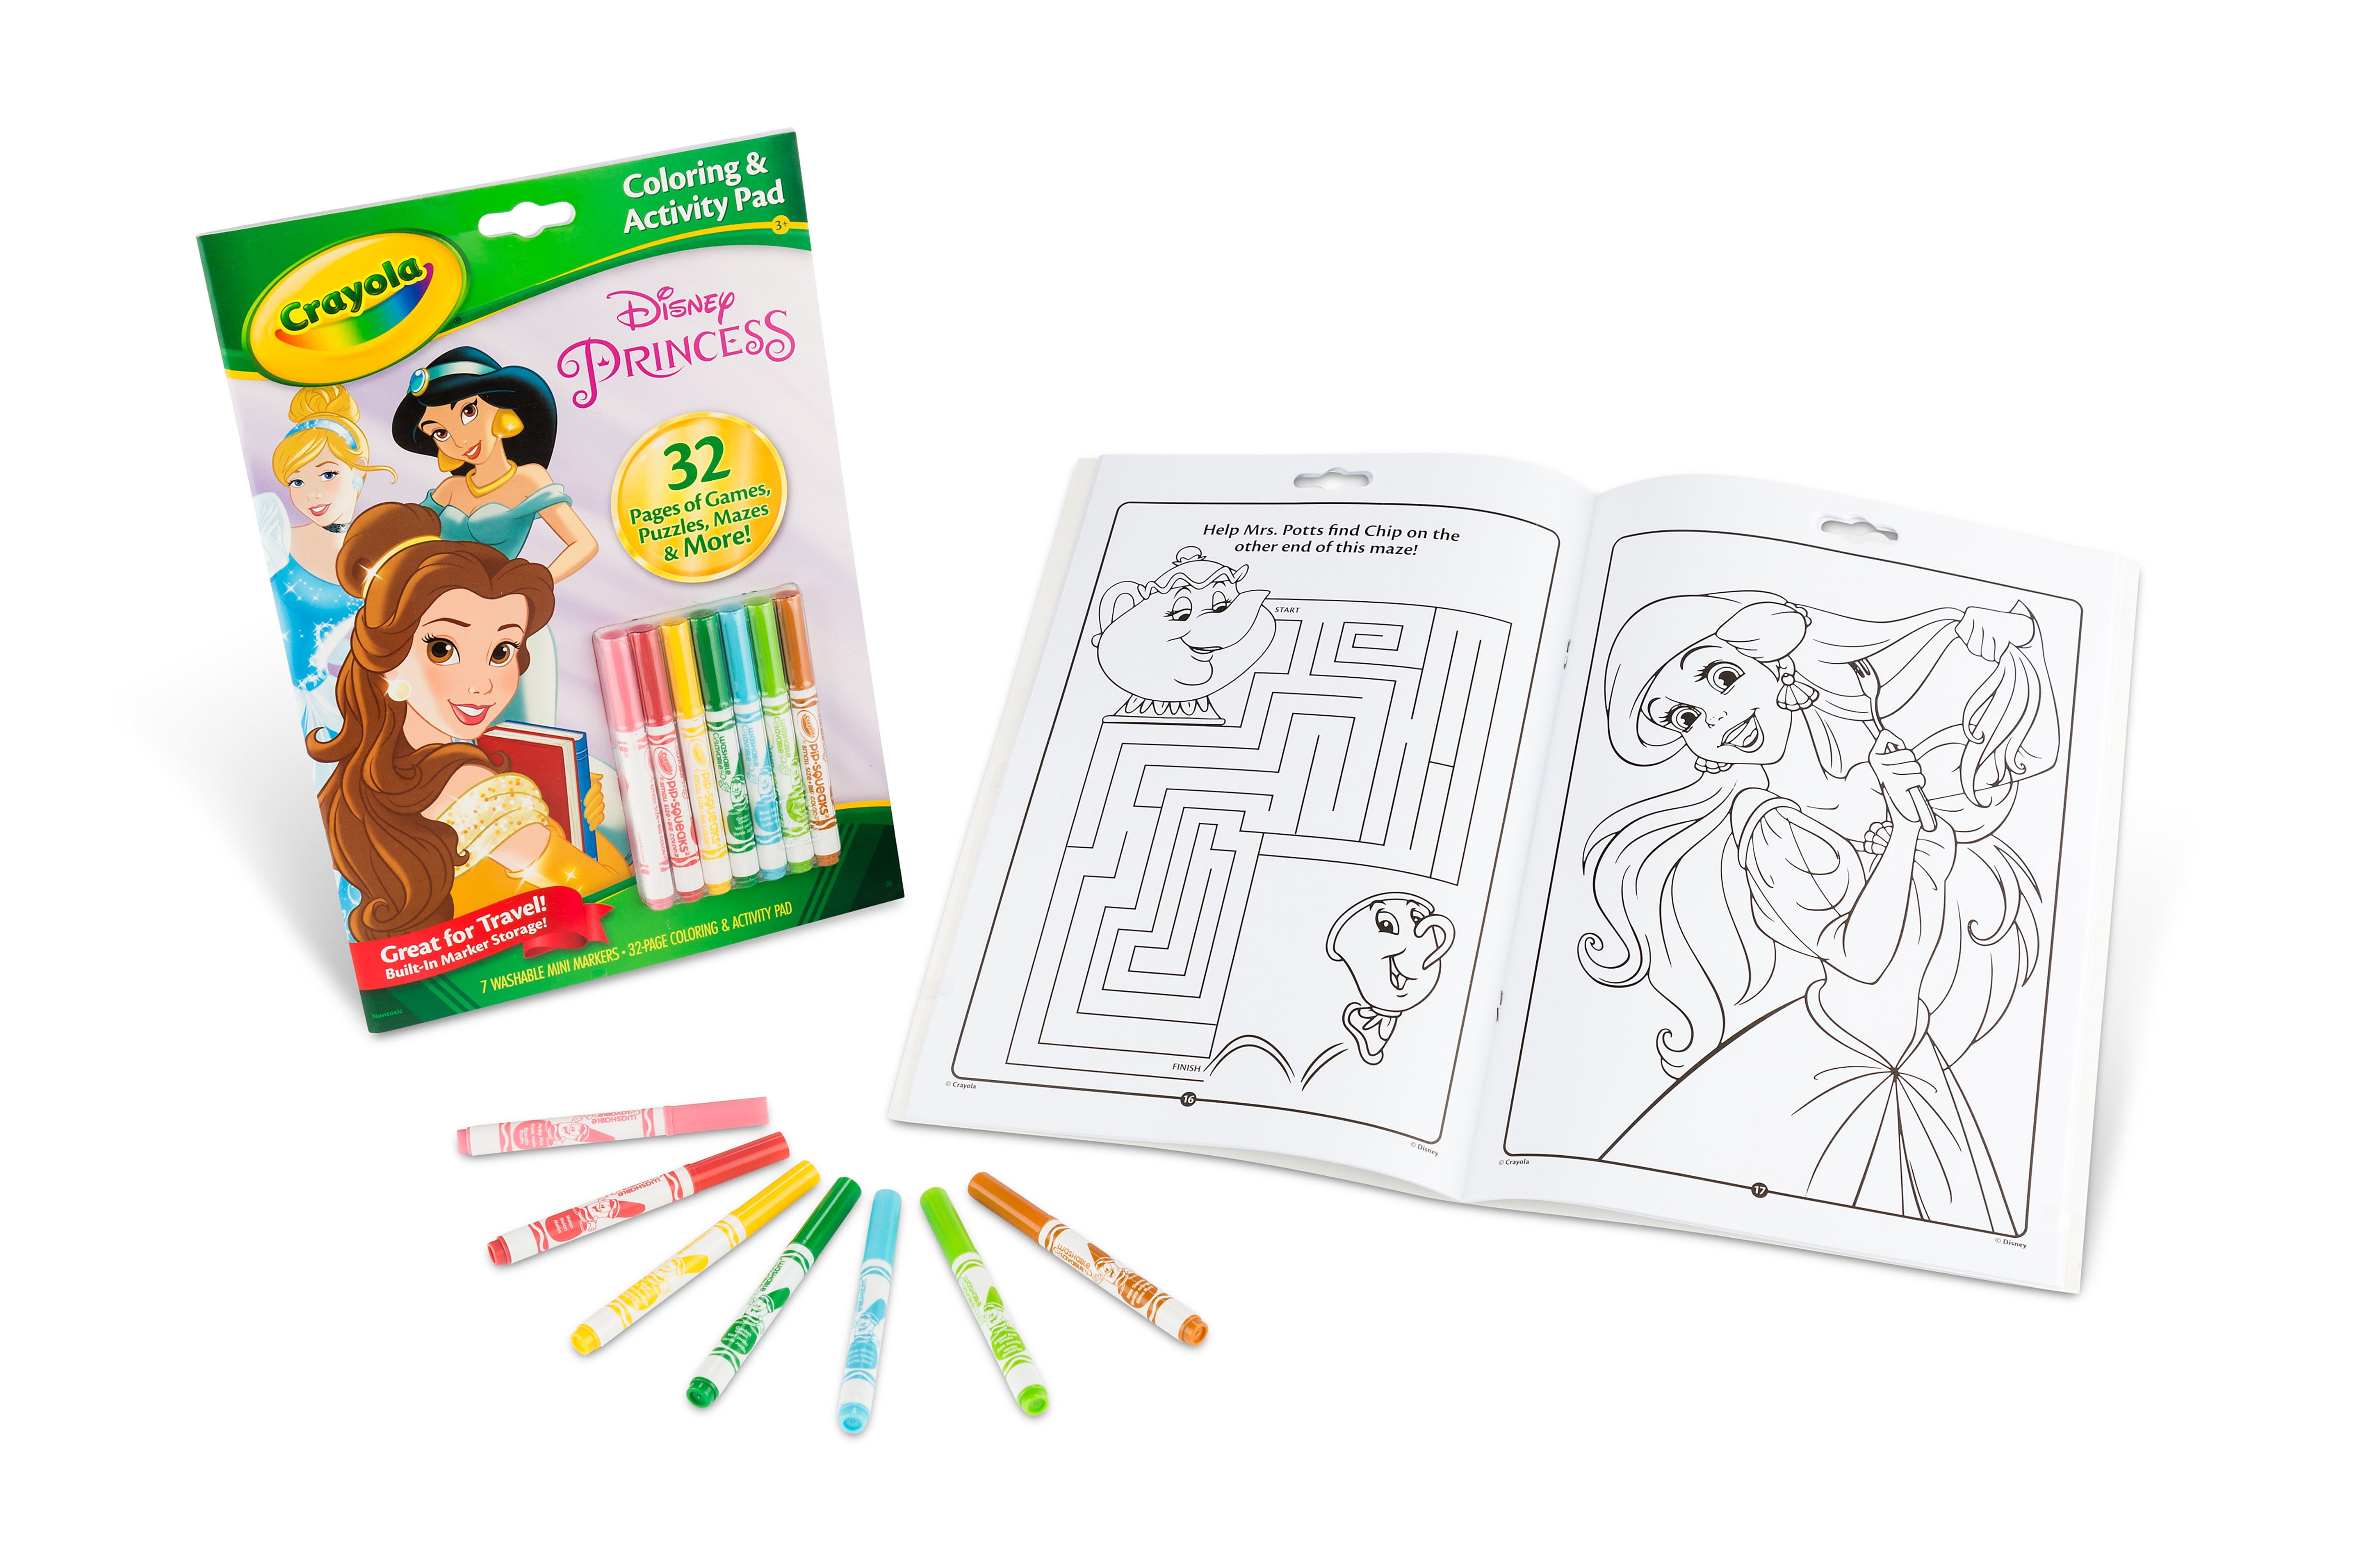 Crayola Disney Animation Studios Coloring Book